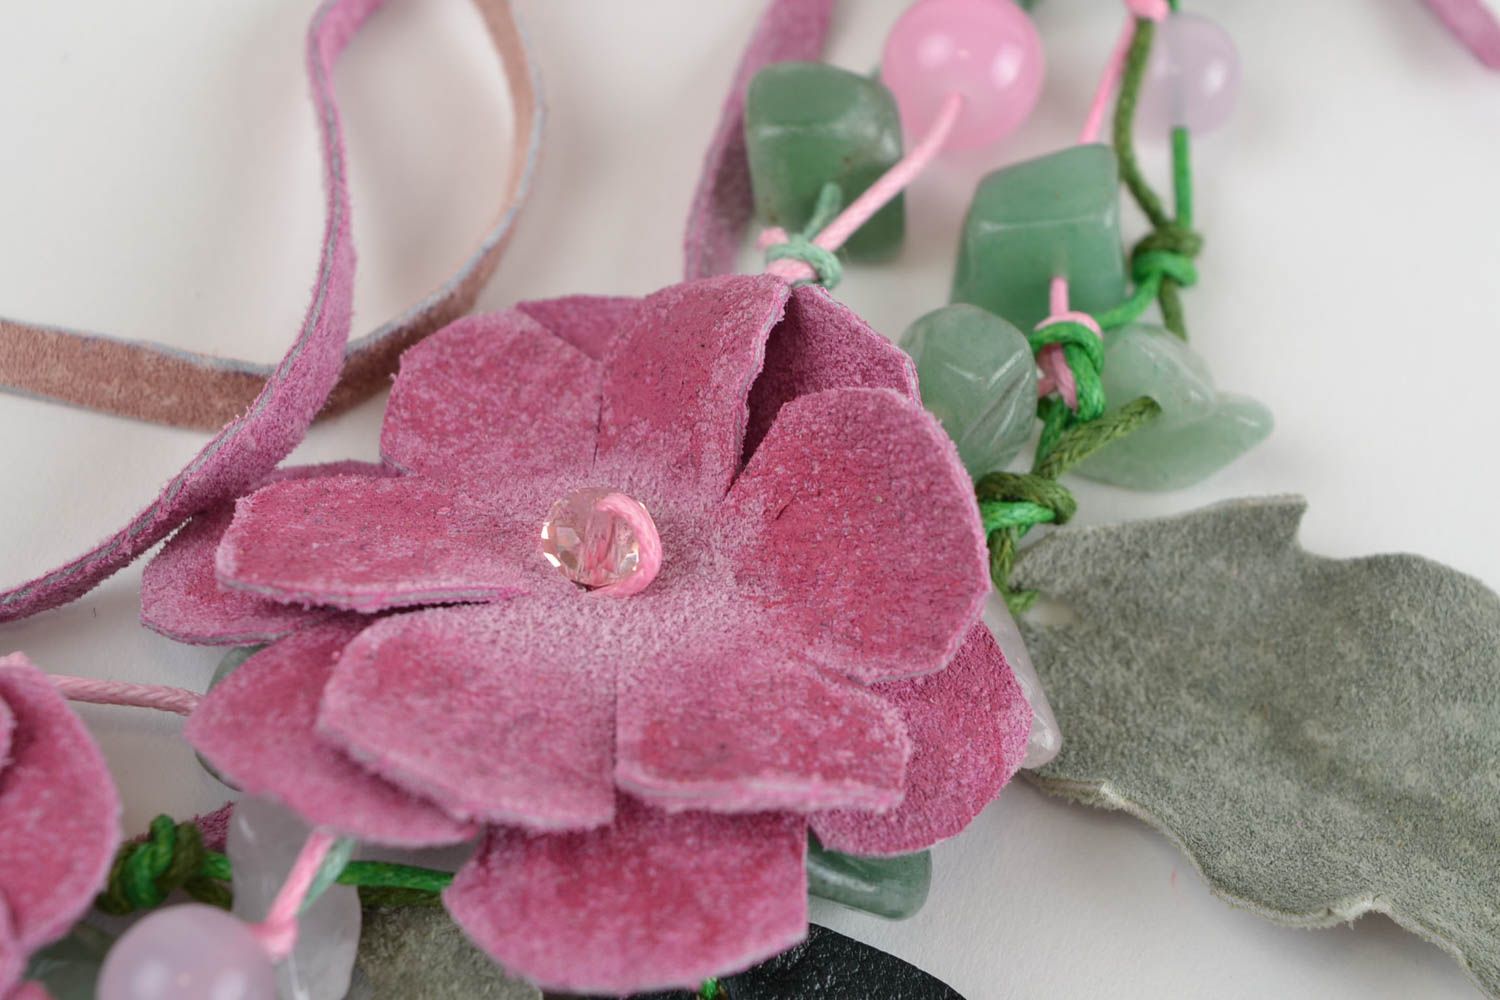 Колье из кожи и натуральных камней с цветами крупное розовое стильное хэнд мейд фото 4